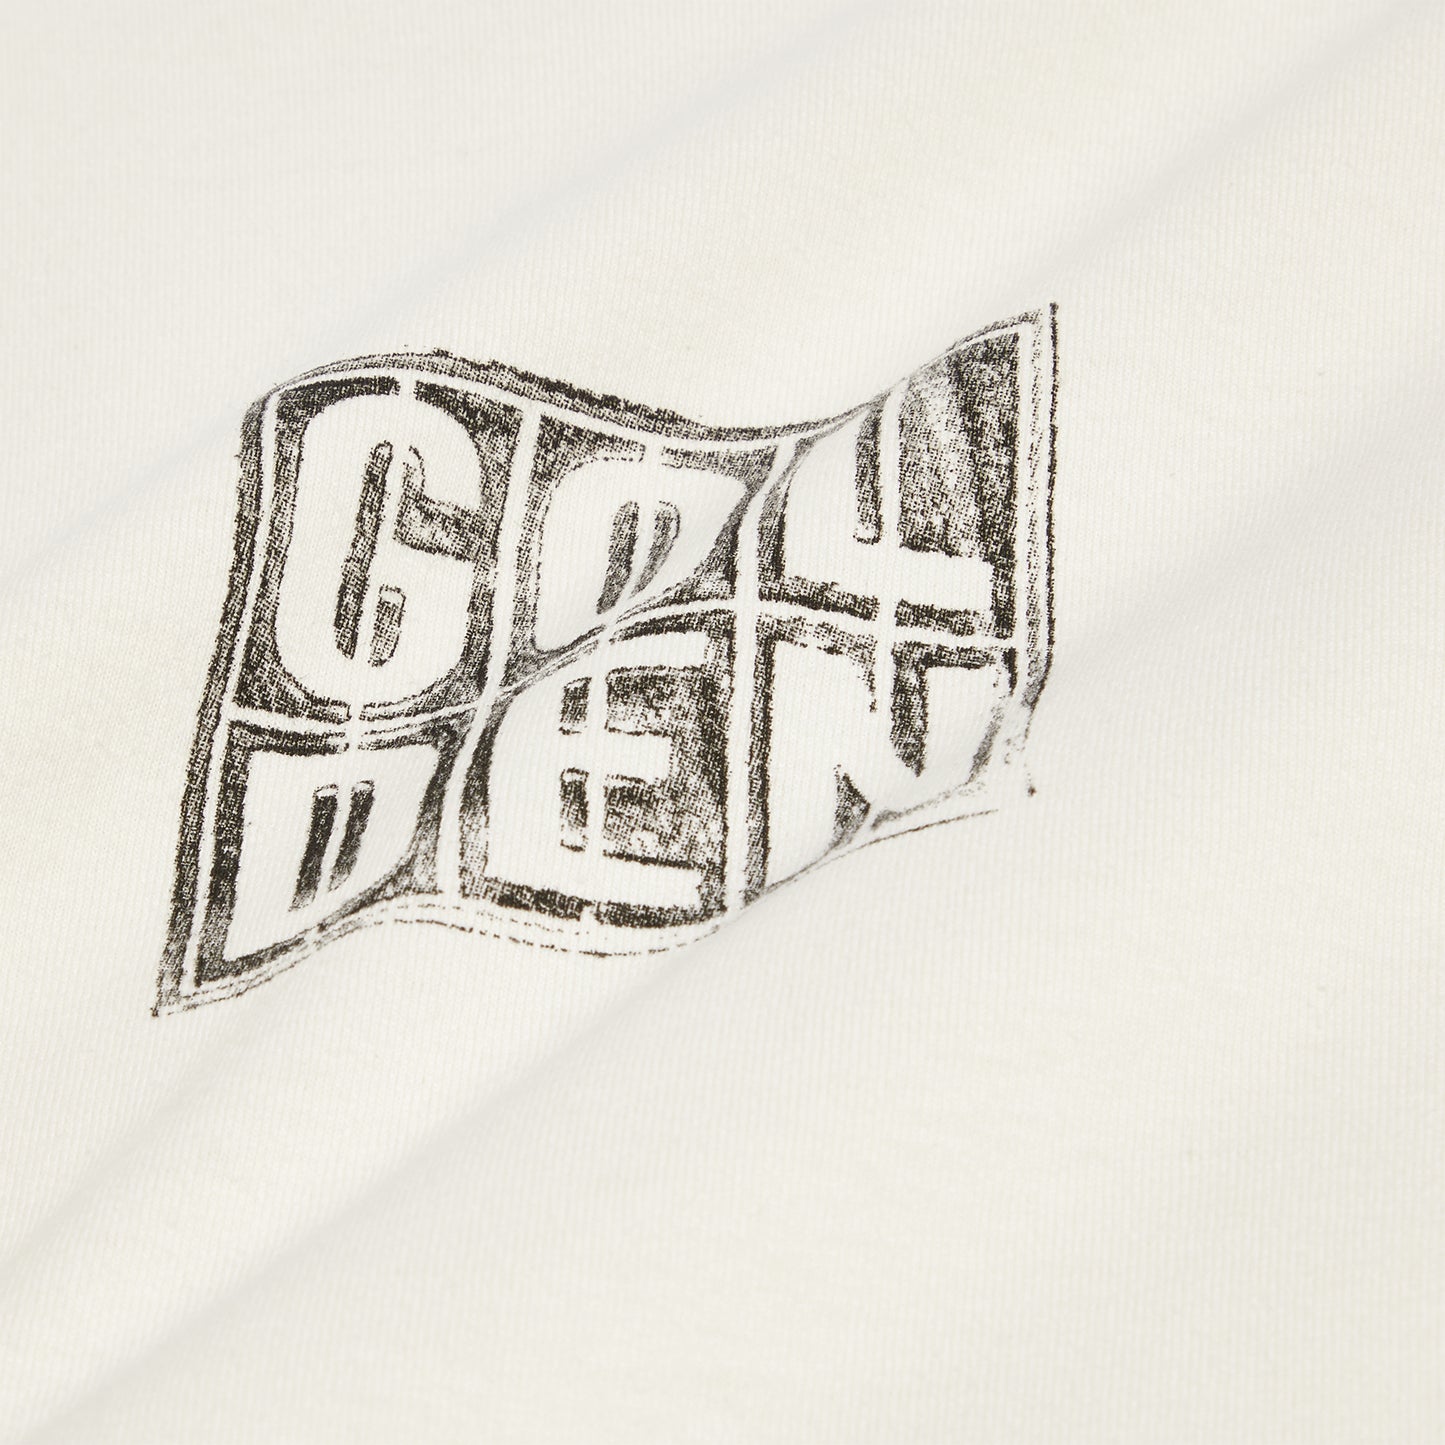 Golden Goose Womens Journey T-Shirt (White/Black)